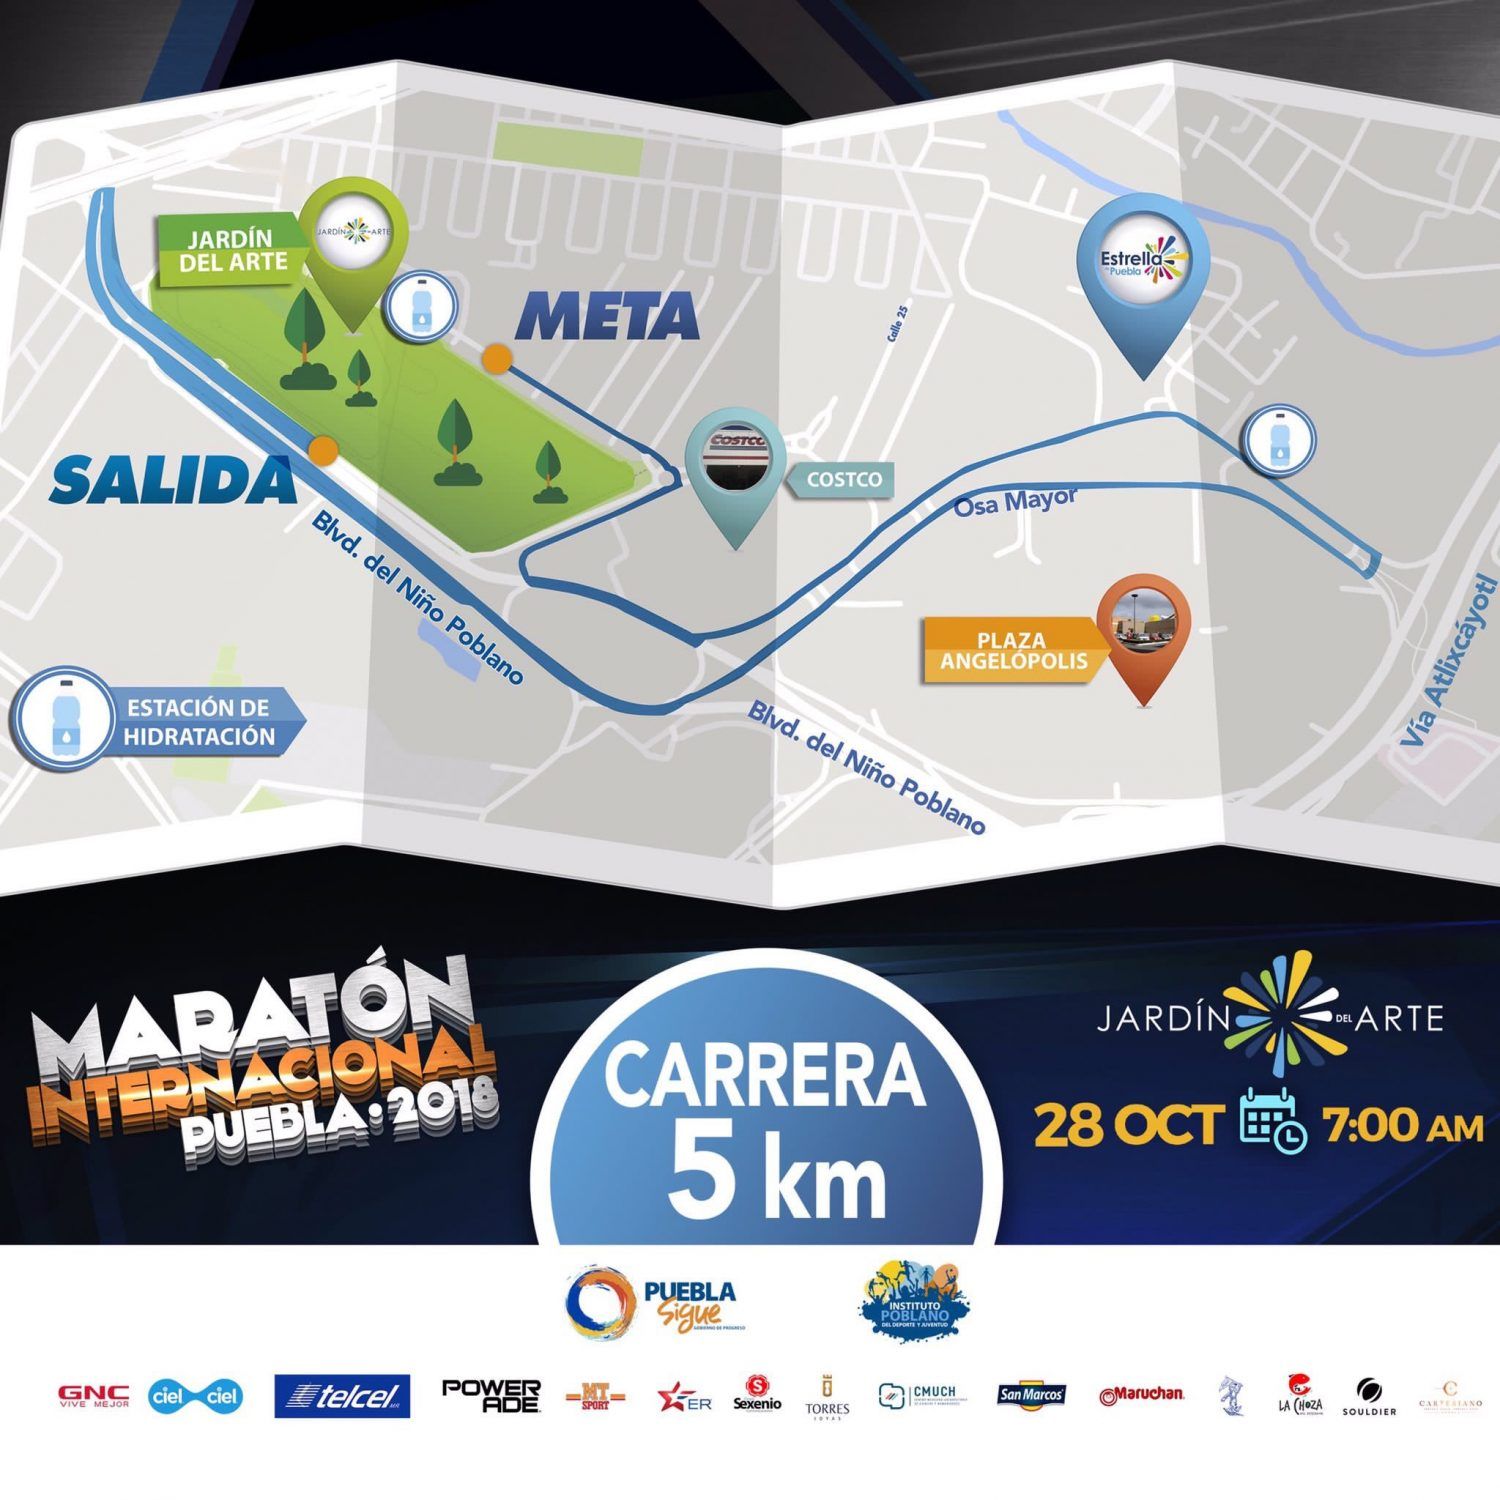 ¿Listos para el Maratón Internacional en Puebla?, este será el